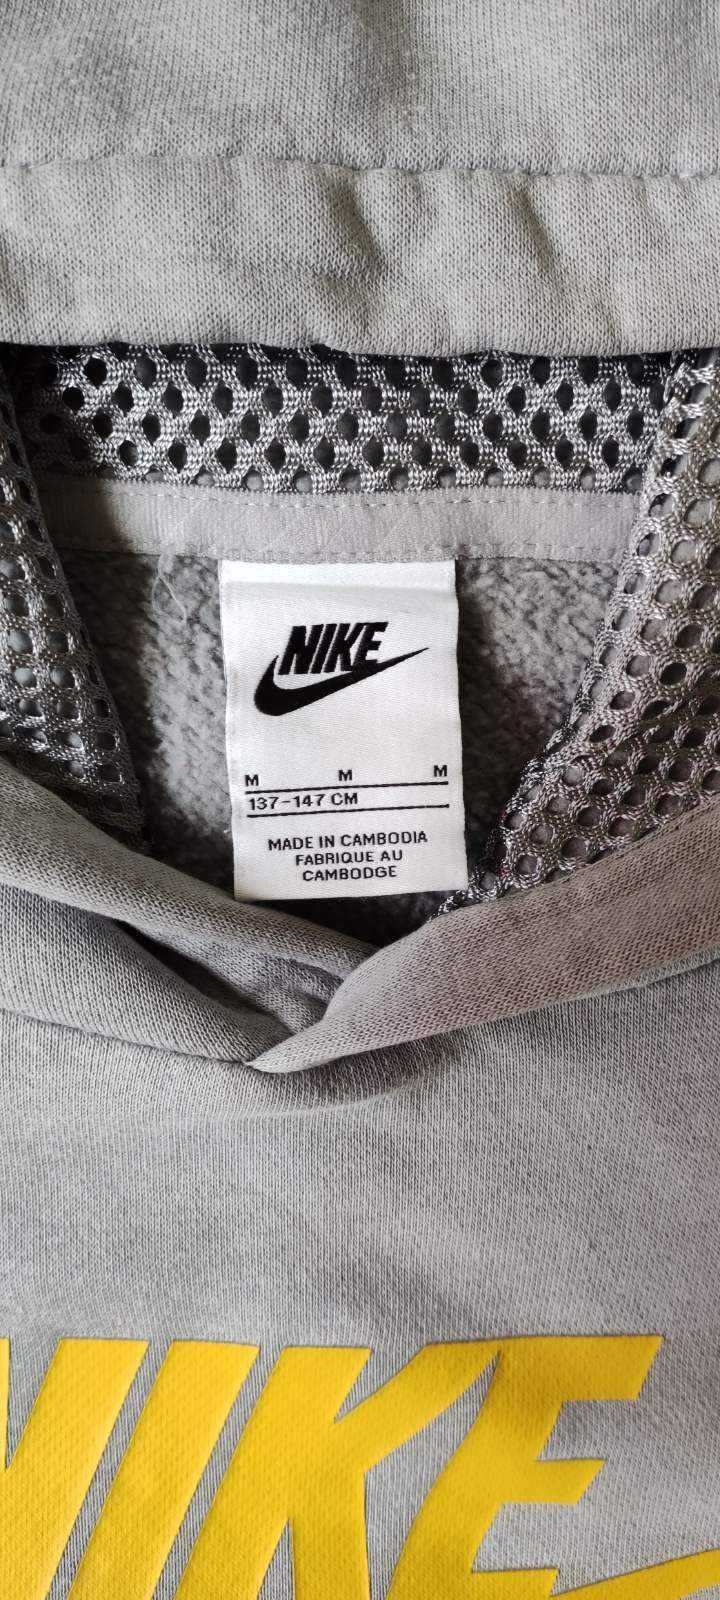 Nike Sportswear Bluza (137-147 cm)